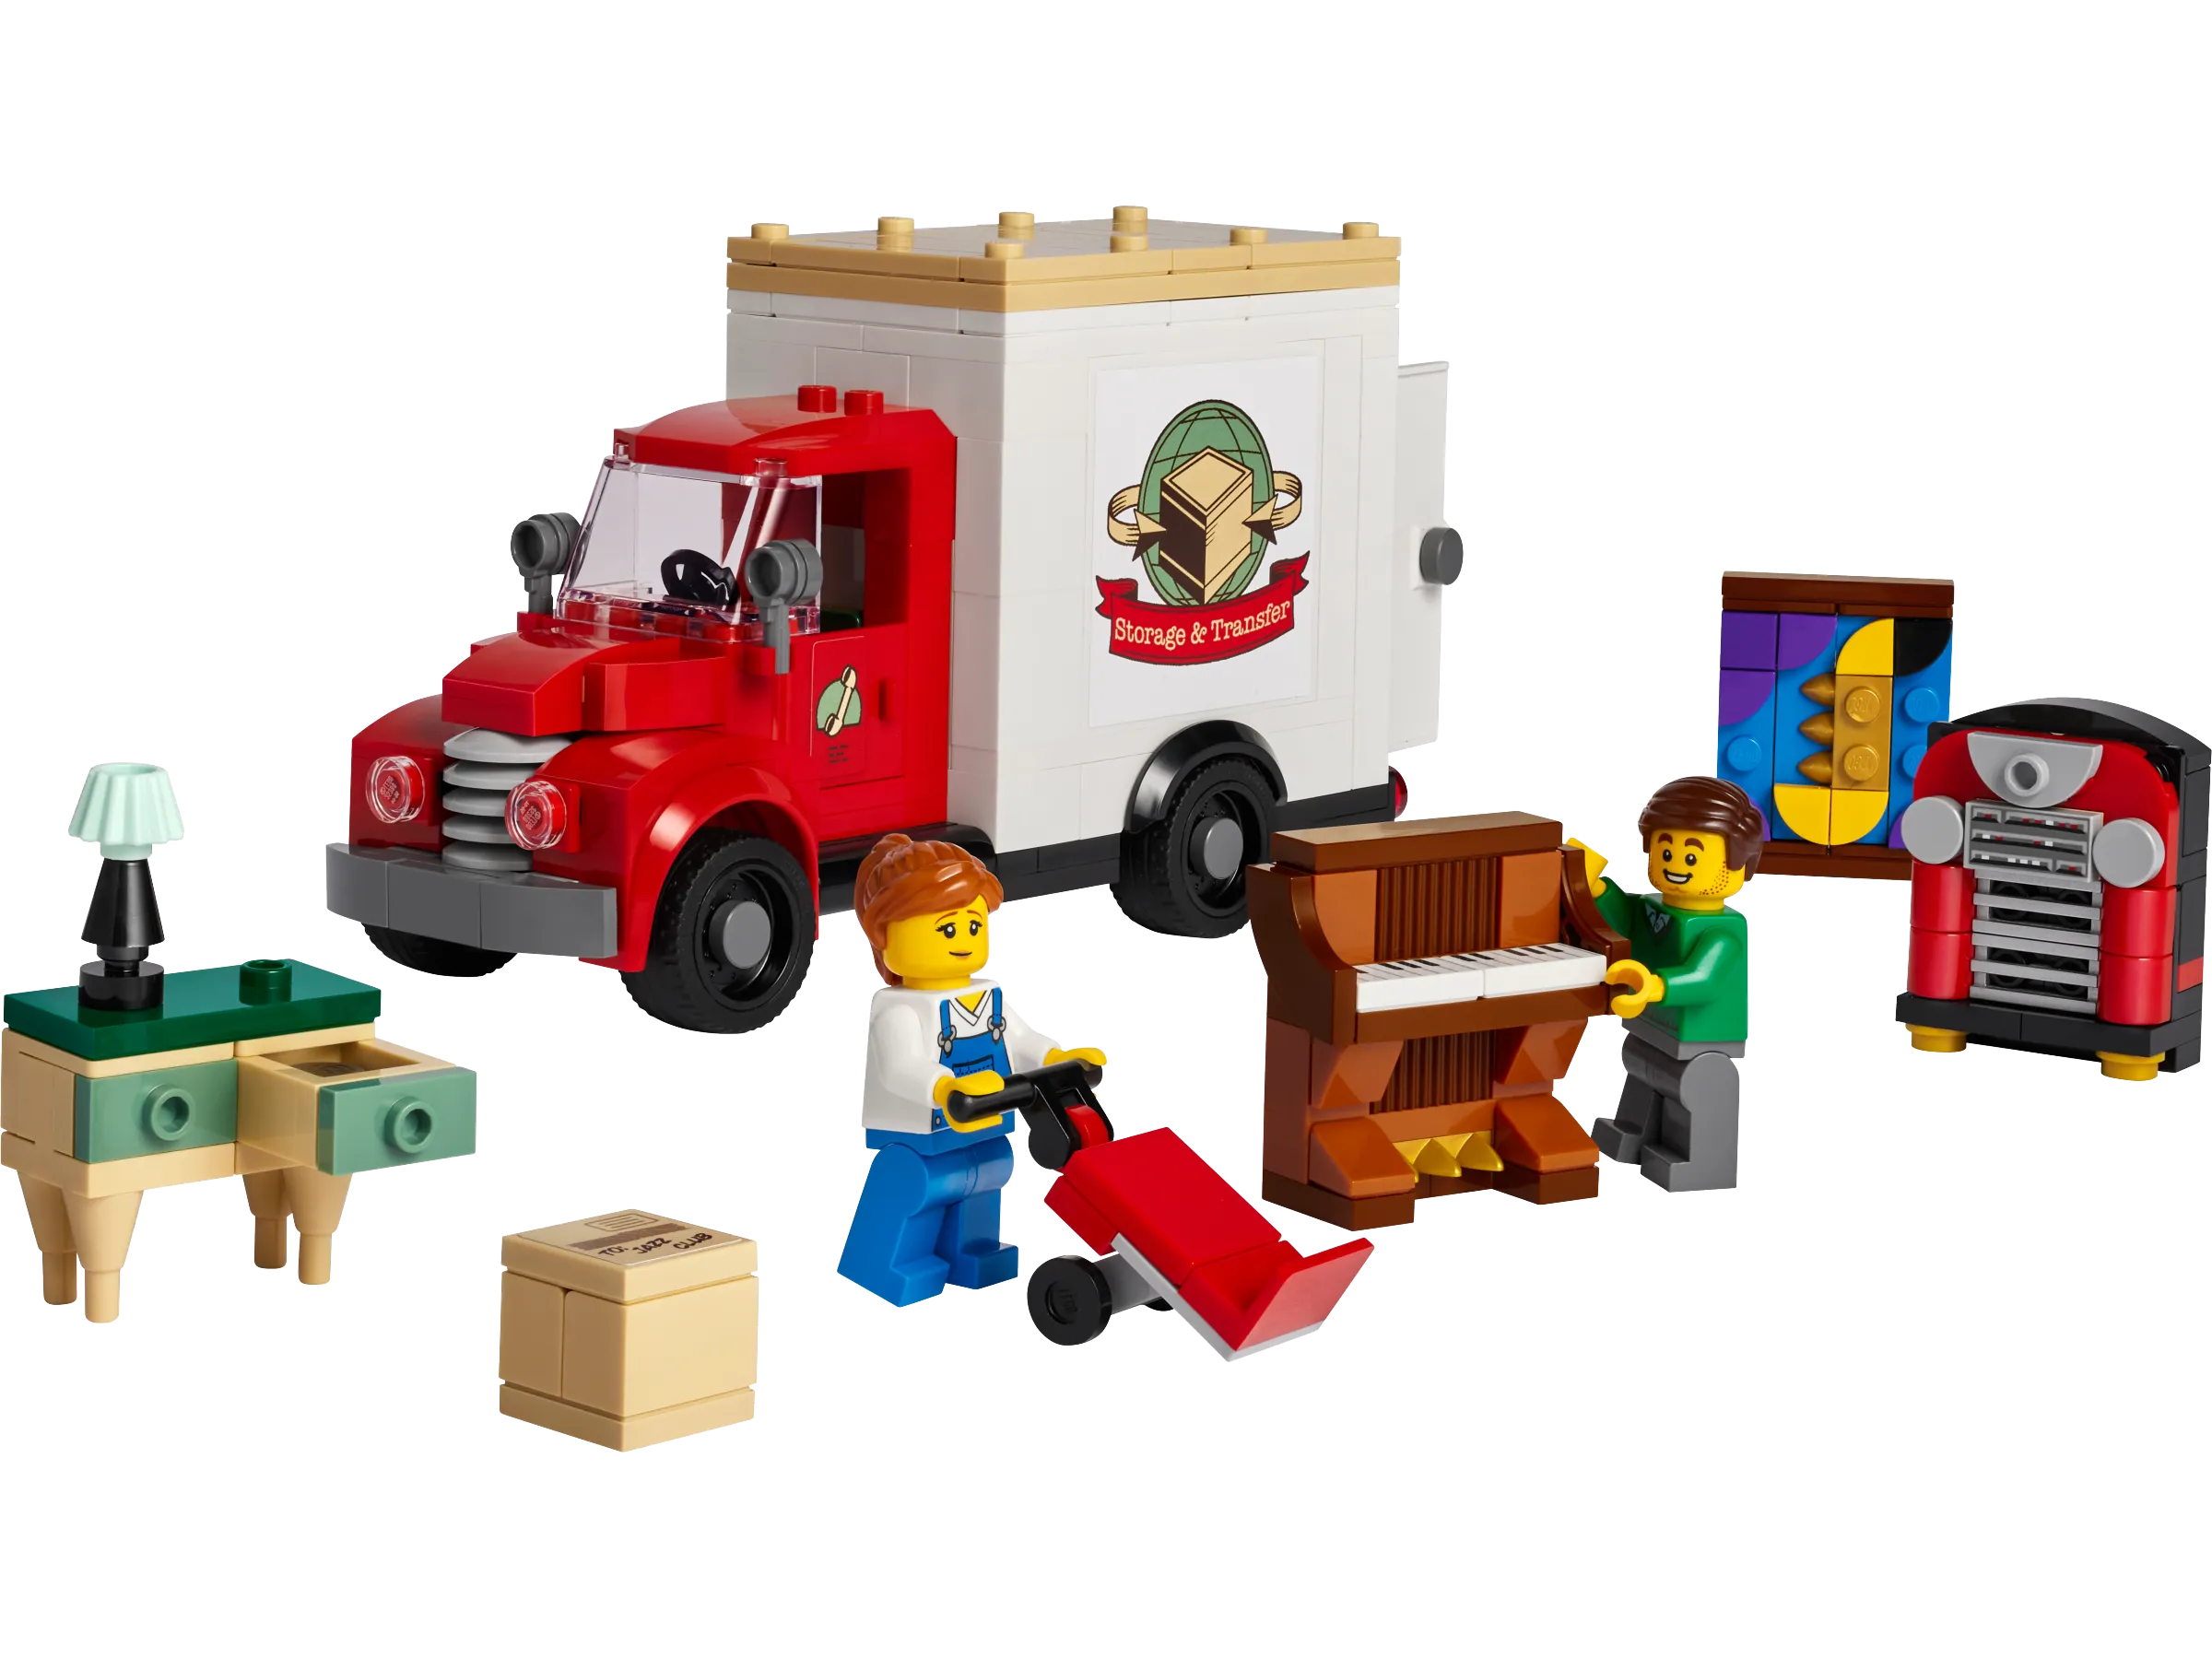 Verfügbarkeitshinweis:  Umzugswagen GWP im LEGO Store feature image